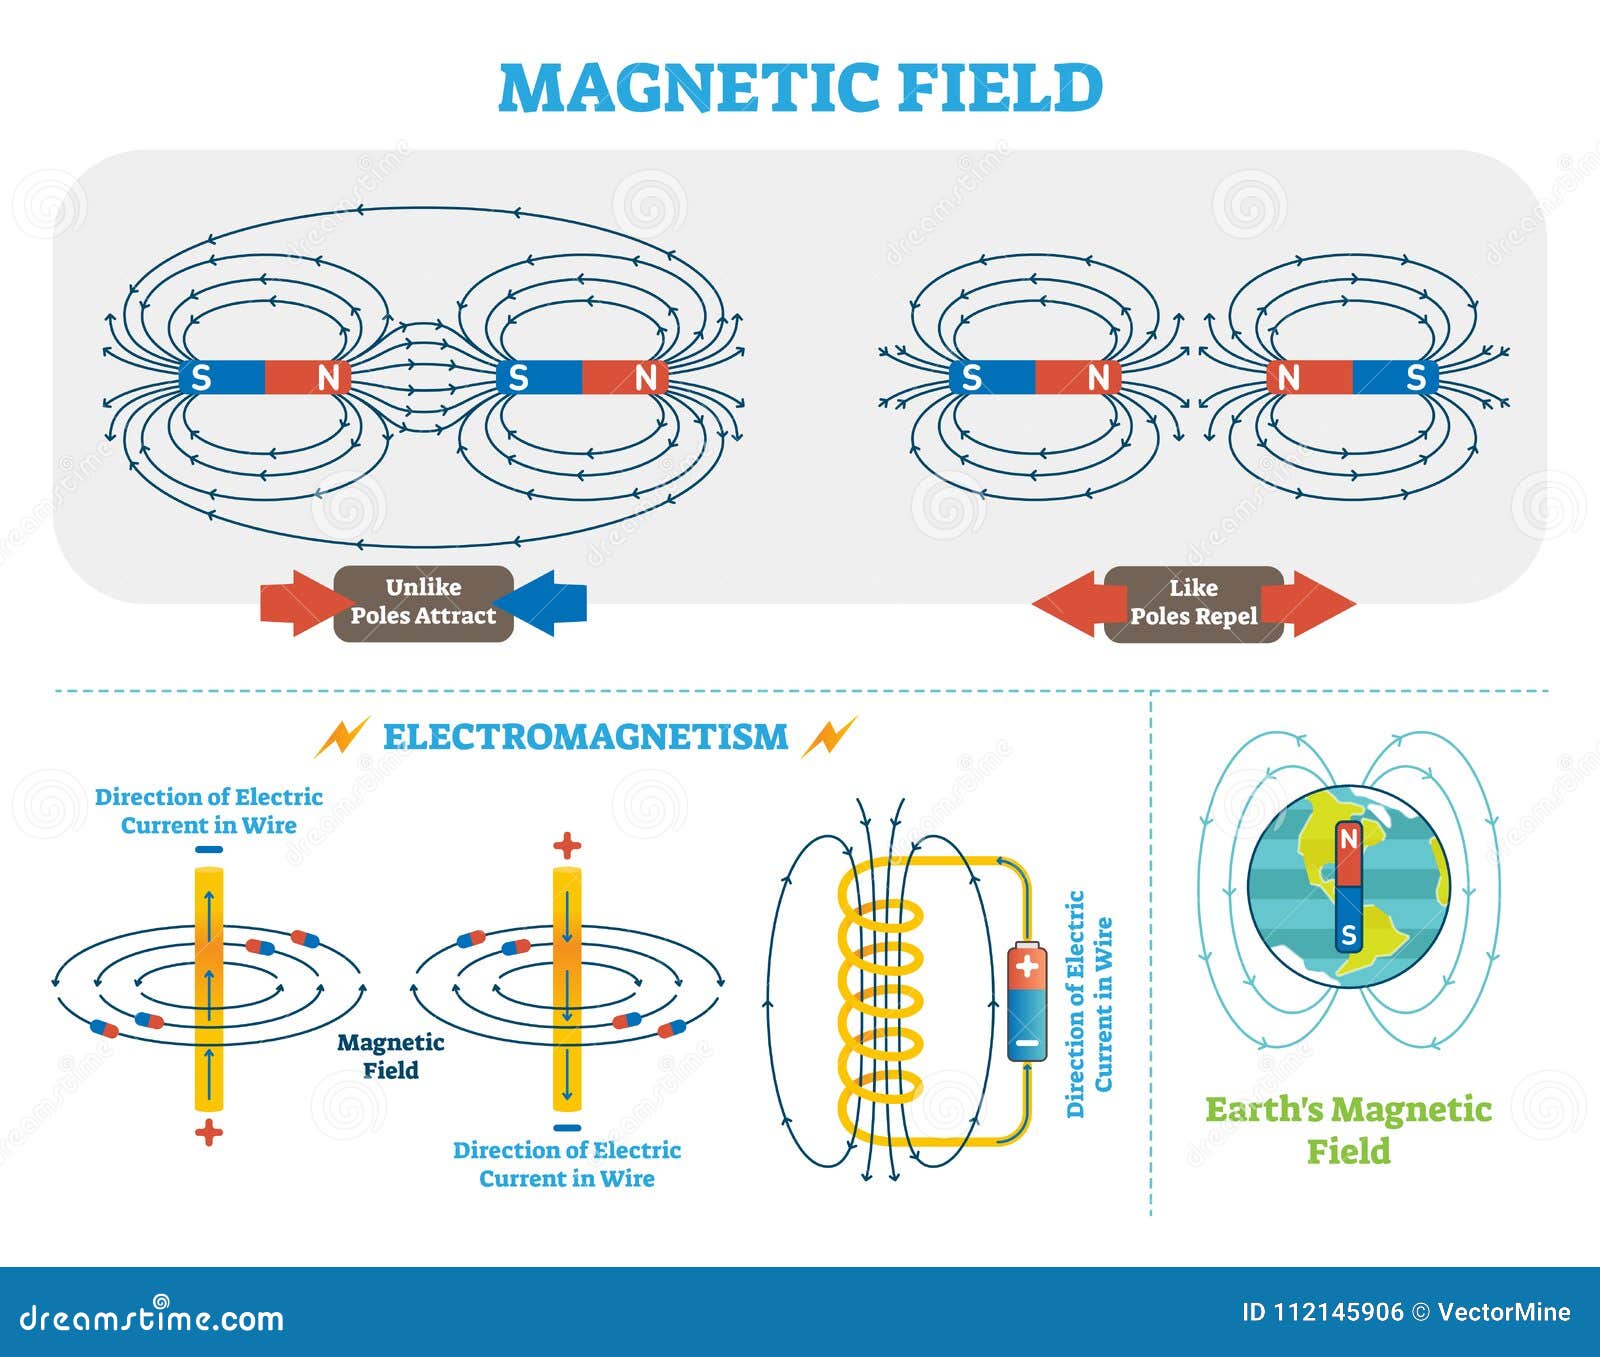 Из какого полюса выходит магнитное поле. Николаев скалярное магнитное поле. Полюса магнитов магнитное поле. Магнитное поле электромагнетизм. Магнитное поле кольцевого магнита.